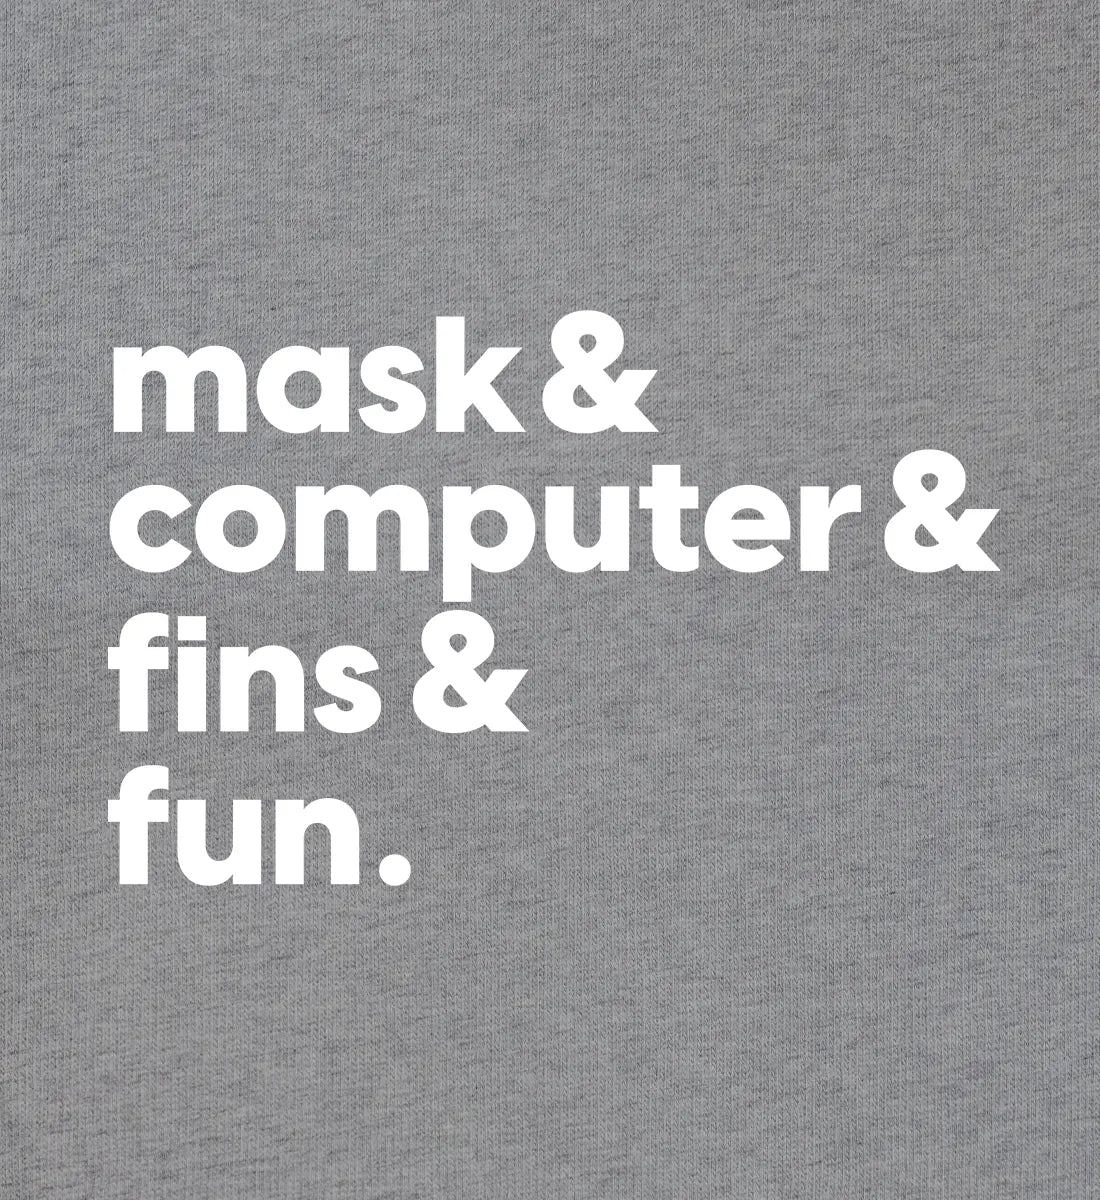 Mask & Fun - Bio Hoodie